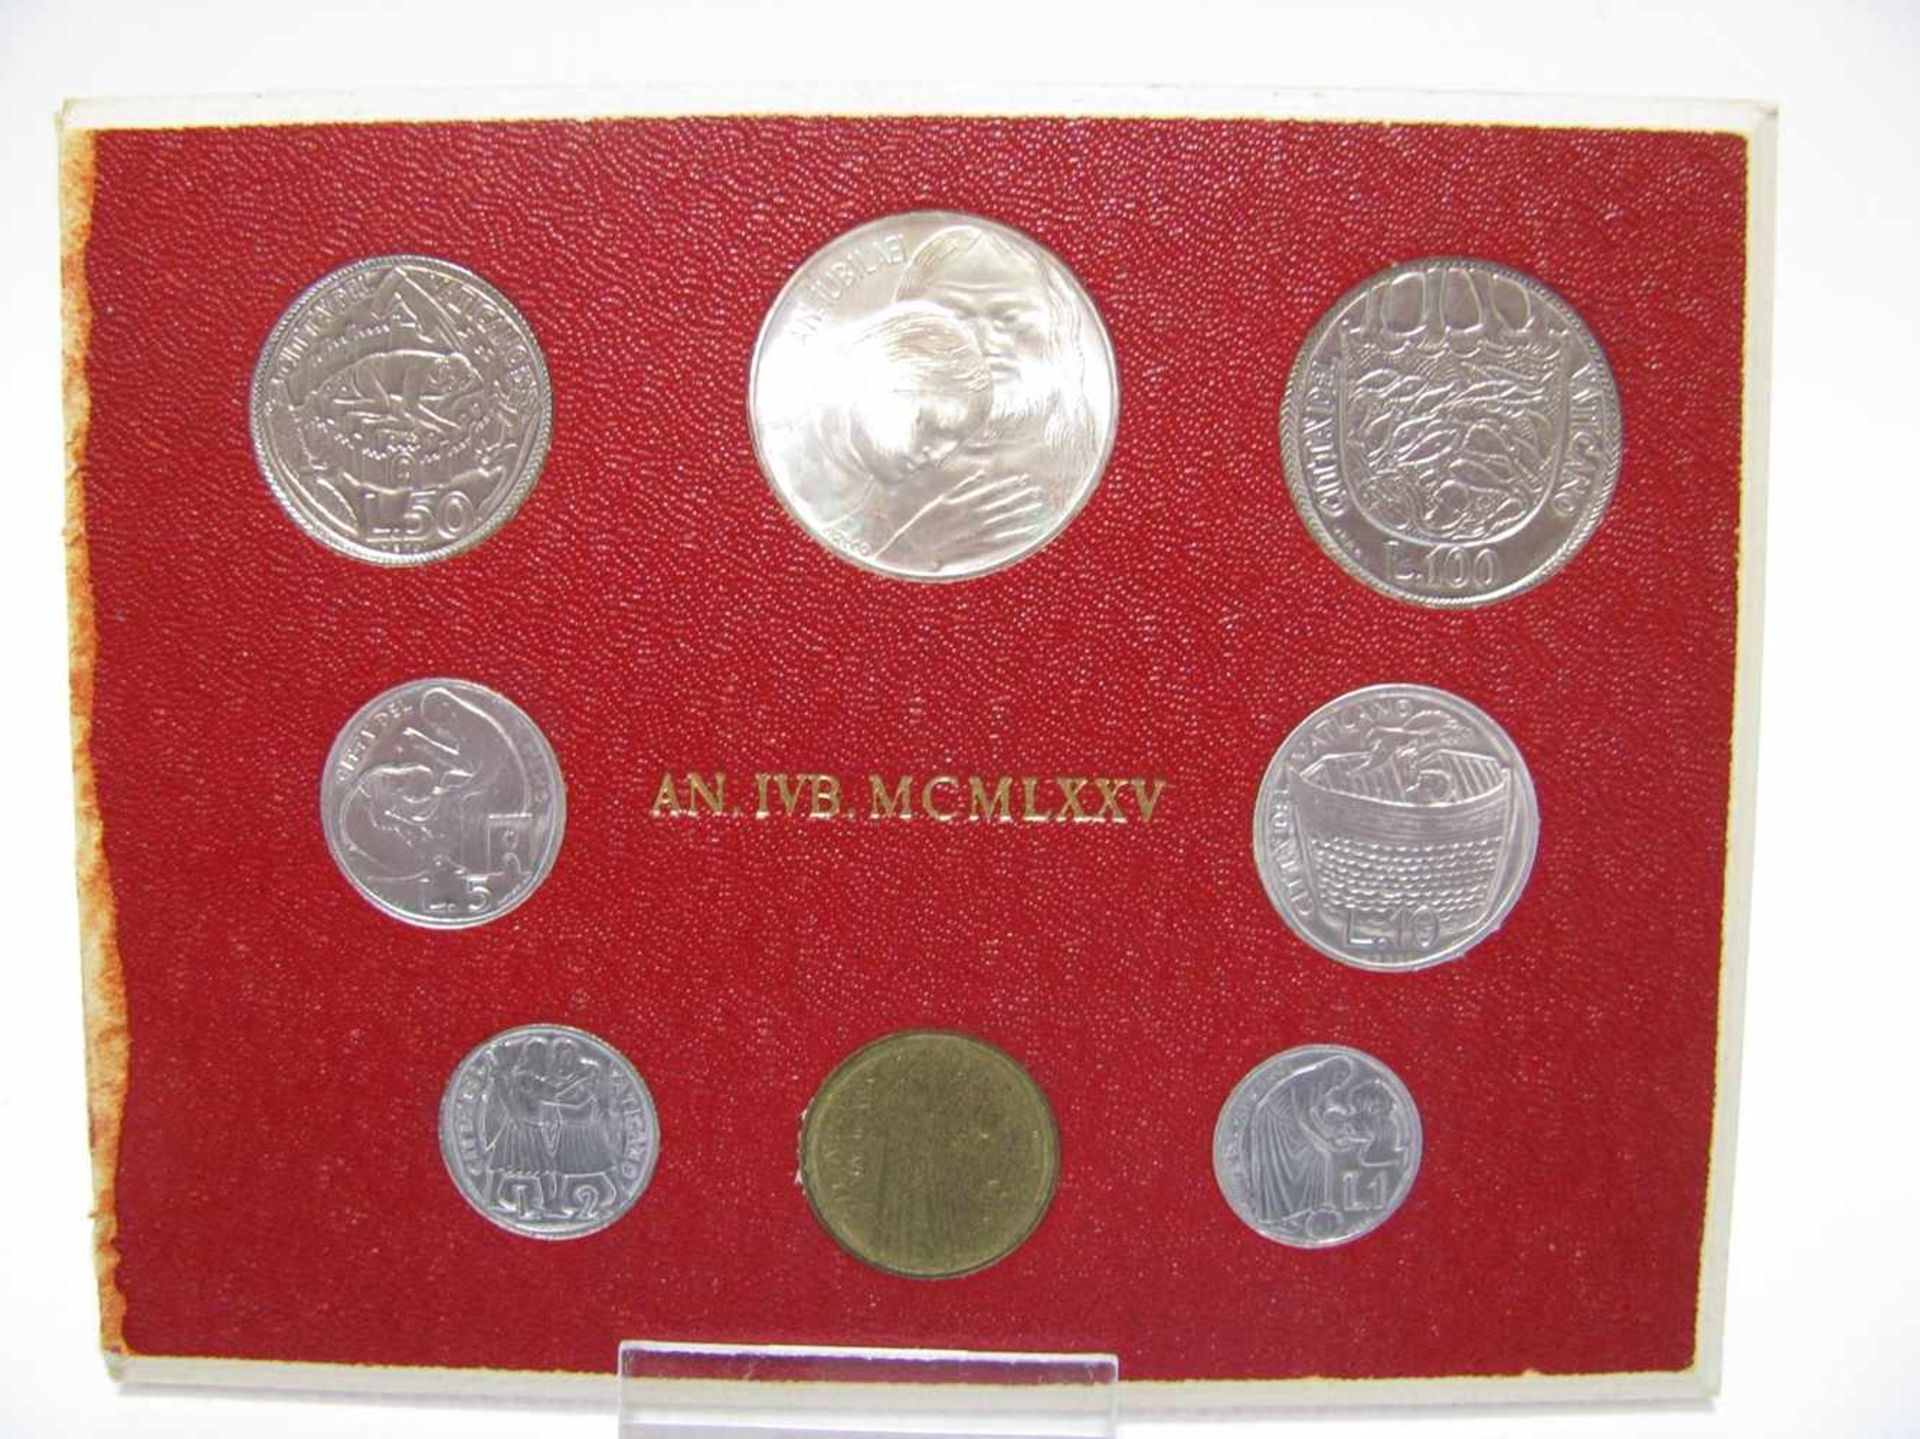 Münzsatz mit 8 Münzen, Vatikan, 1975.